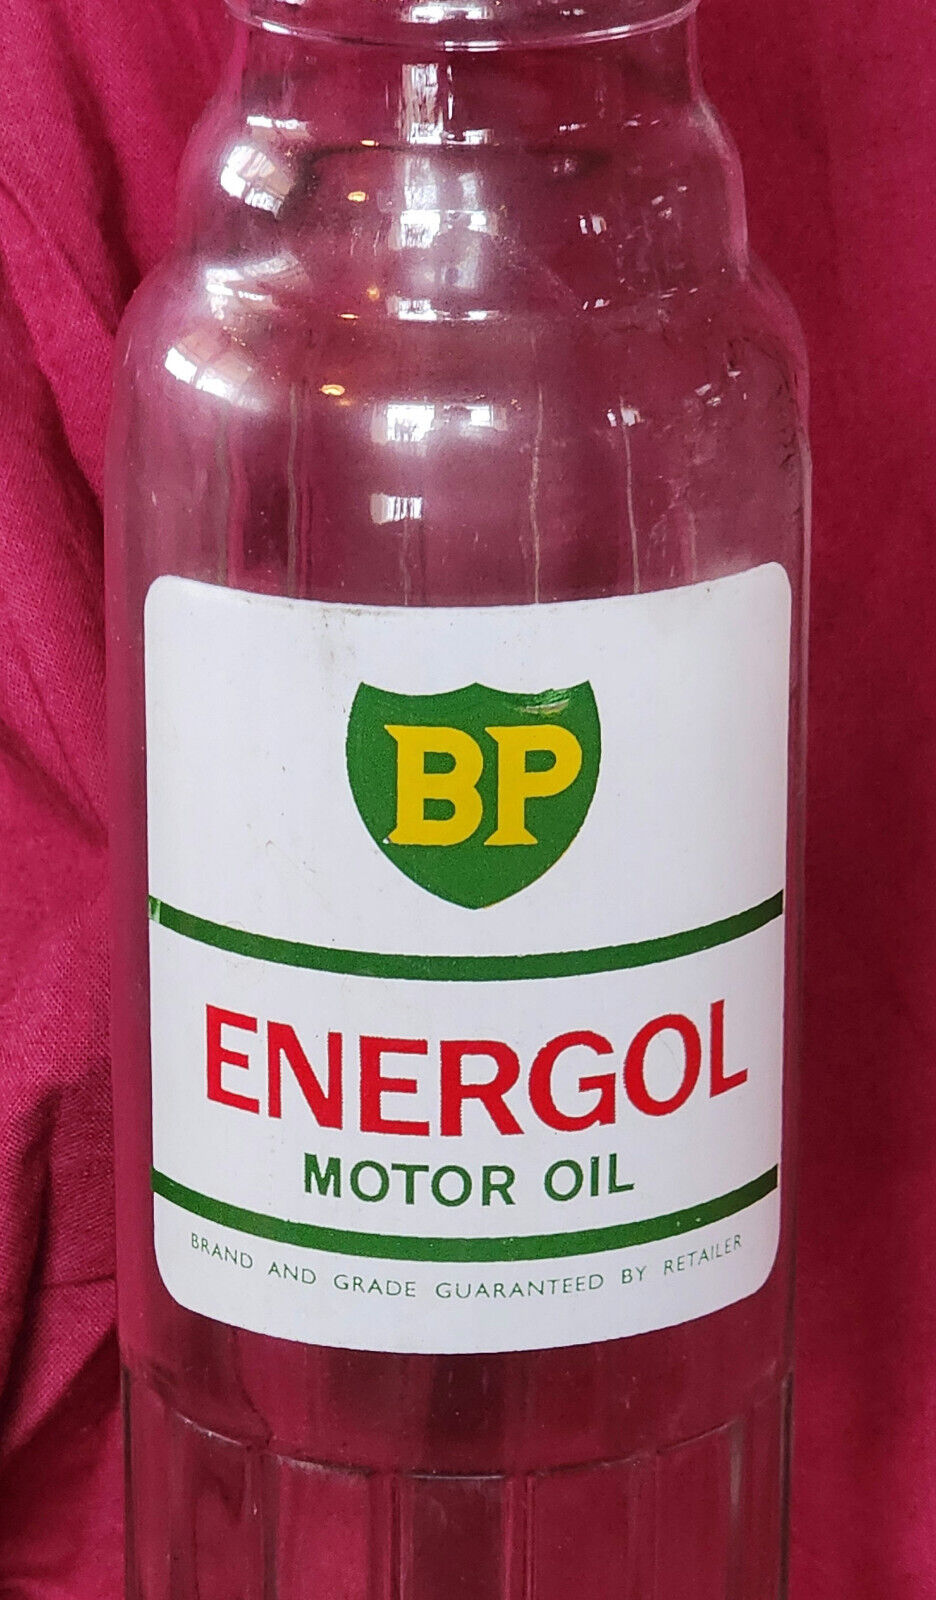 1950s Vintage BP Energol Motor Oil Glass Bottle from UK - 11.5in by 2.5in - EUC